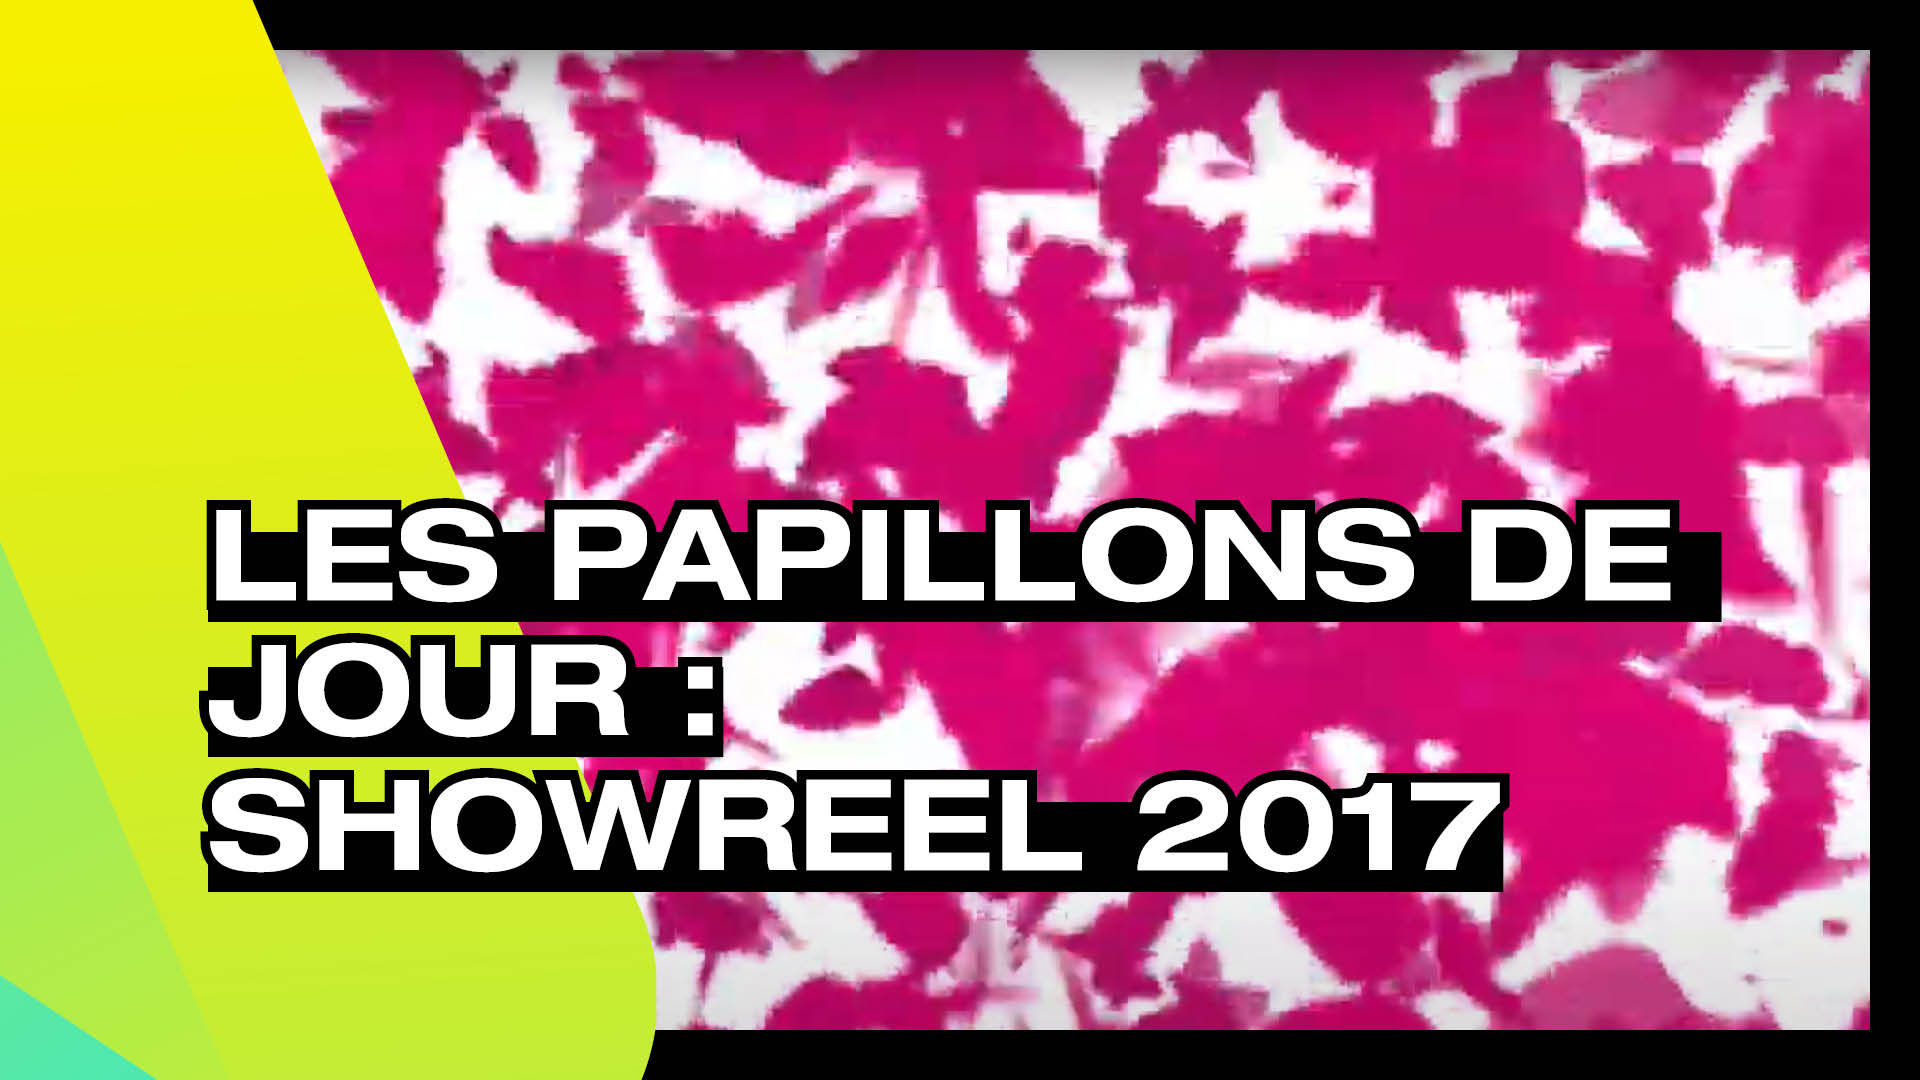 LES PAPILLONS DE JOUR - Showreel 2017